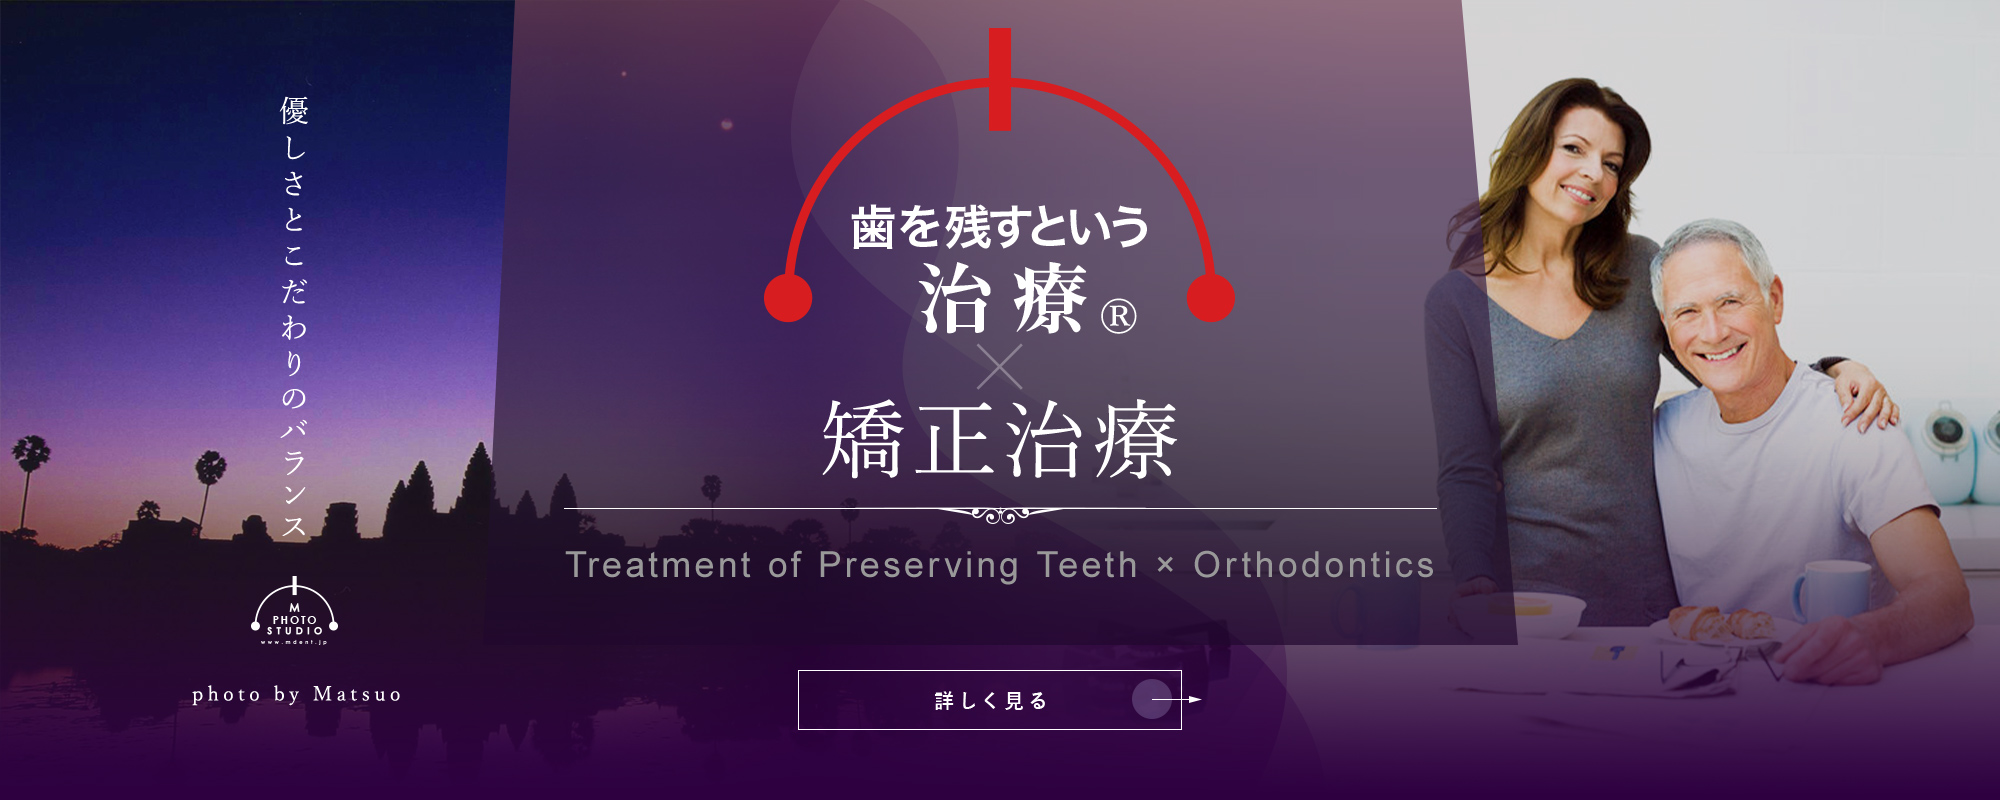 歯を残すという治療®×矯正治療